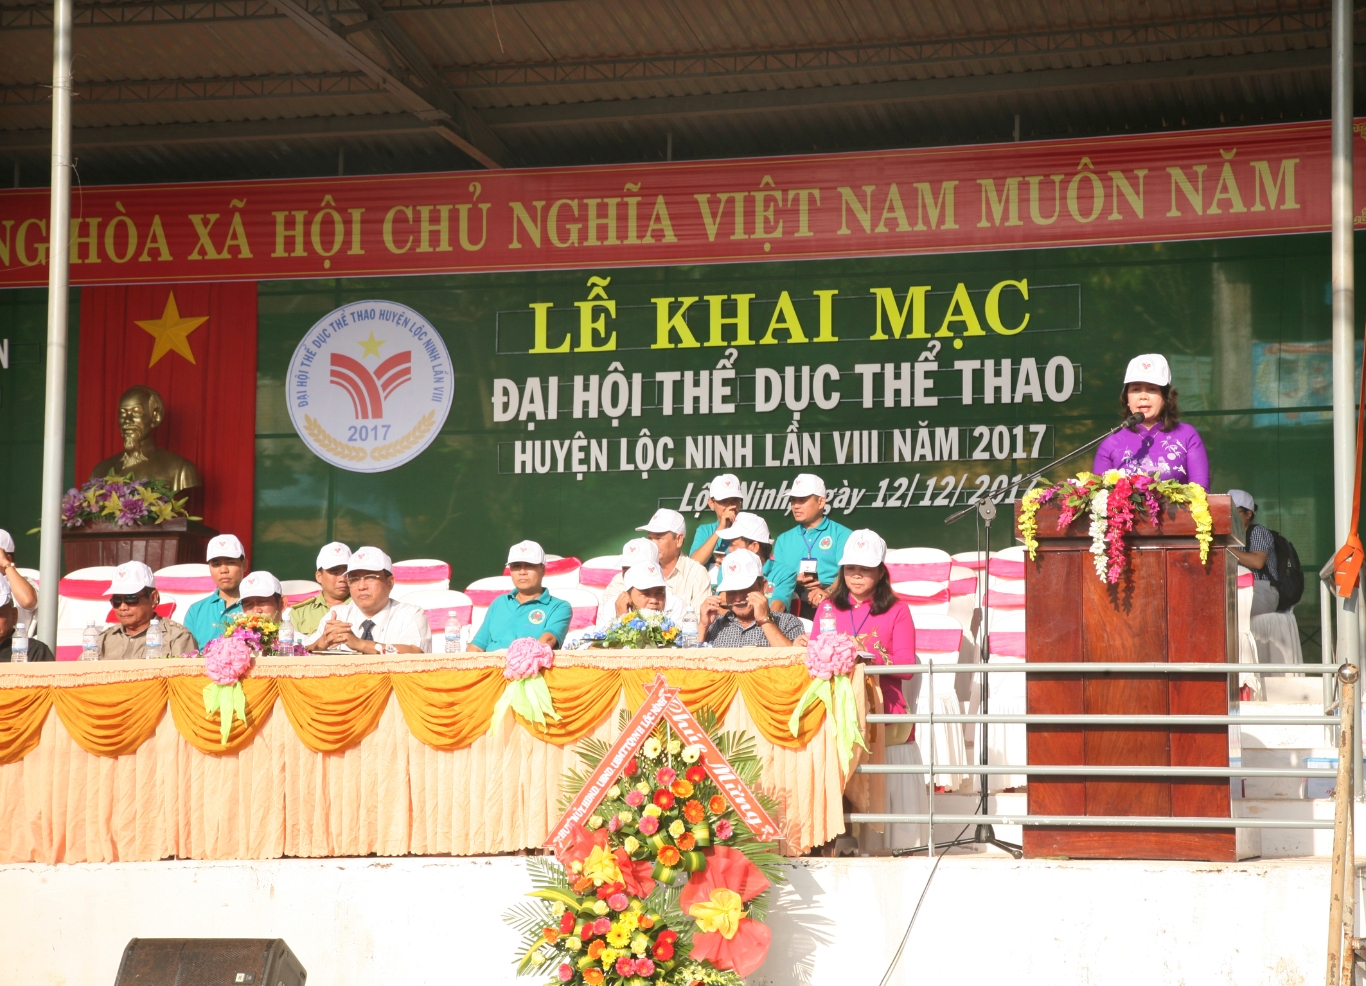 Đại hội TDTT huyện Lộc Ninh lần VIII năm 2017